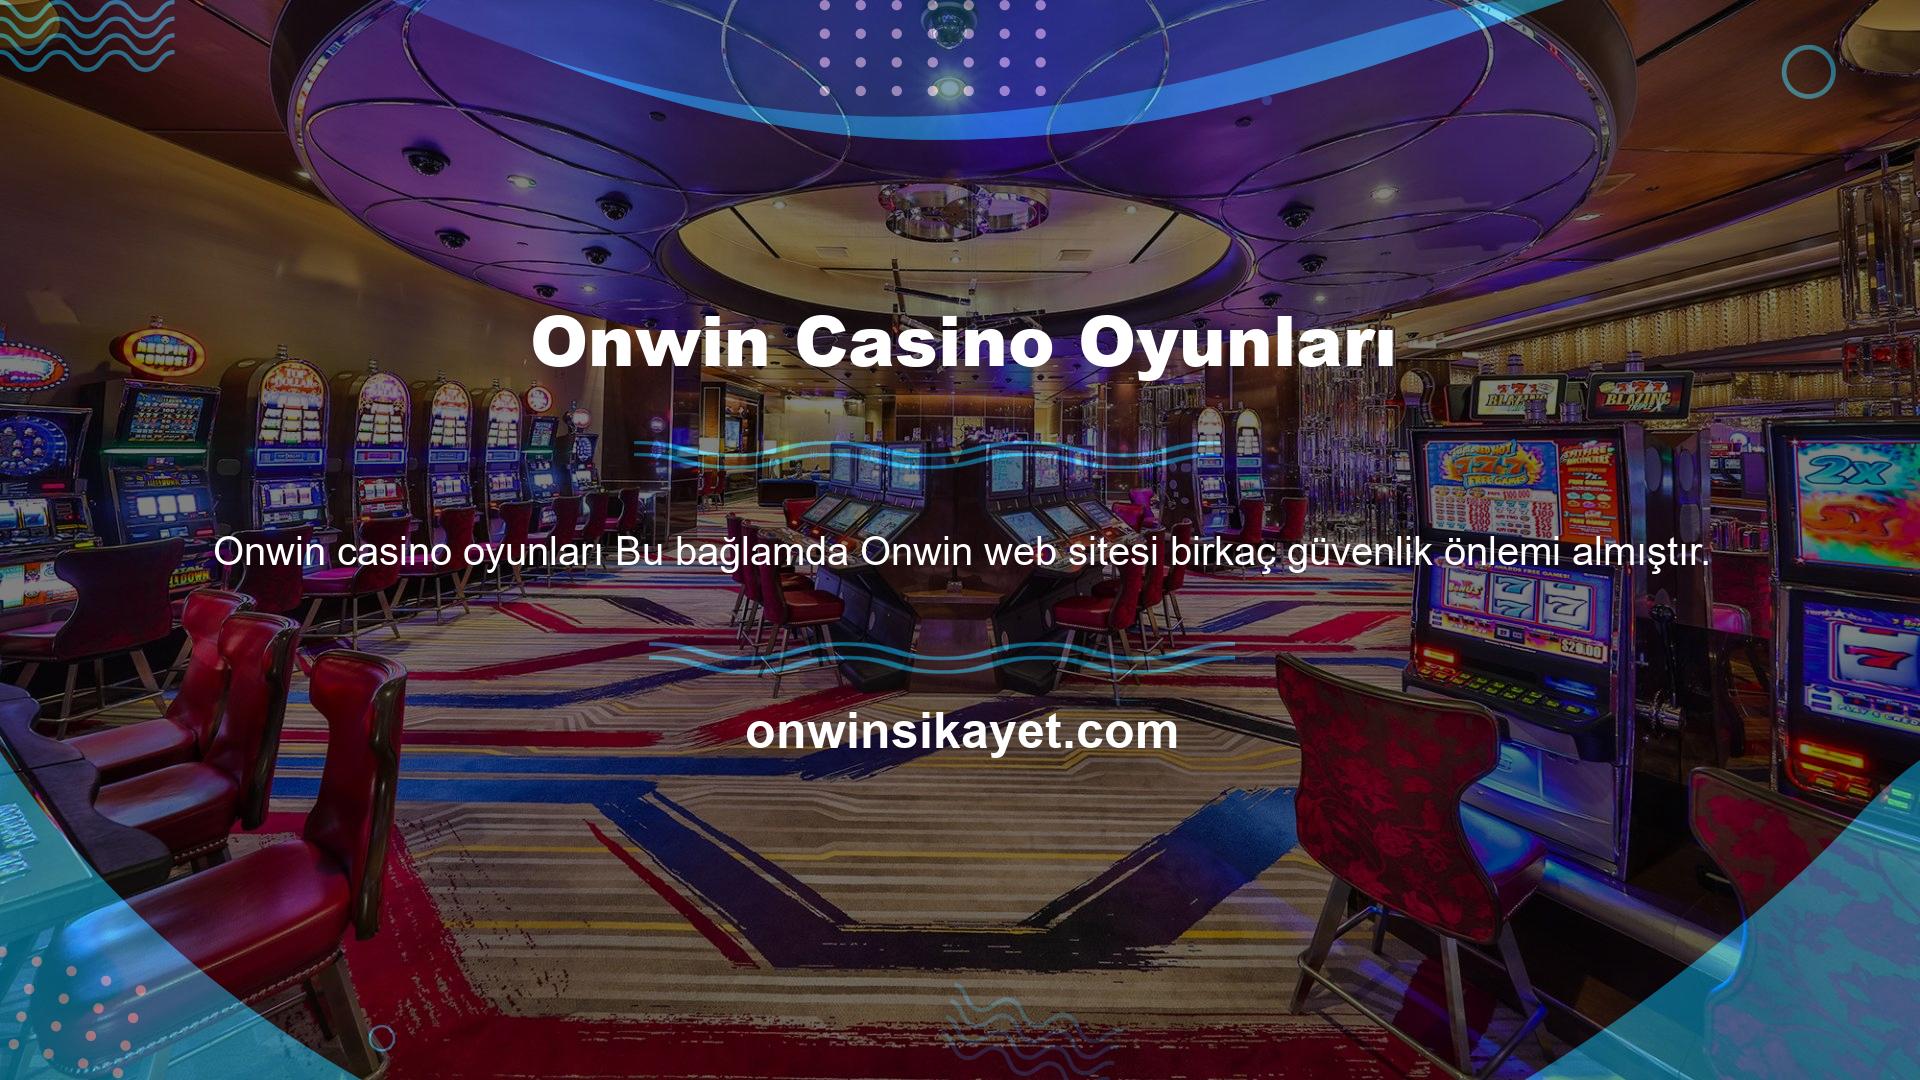 Onwin casino oyunları